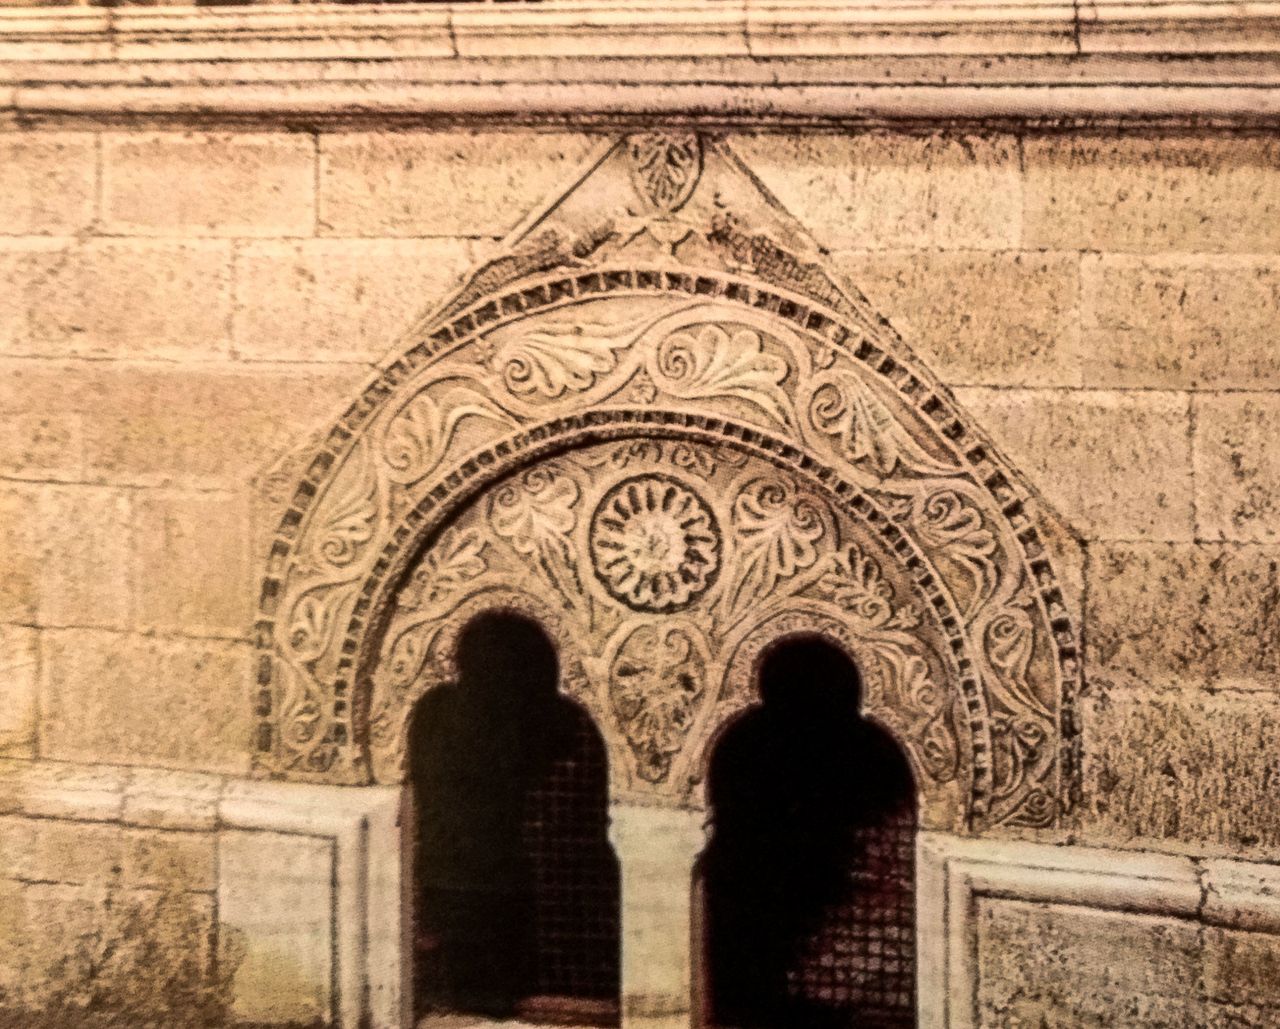 Λεπτομέρεια από τον τάφο της (Αγίας) Θεοδώρας, συζύγου του δεσπότη Μιχαήλ Β΄. Οι αρχαιολόγοι θεωρούν ότι το εντοιχισμένο αετωματικό άνοιγμα αρχικά ήταν παράθυρο βυζαντινής κατοικίας ή παλατιού, καθιστώντας το εξαιρετικά σπάνιο δείγμα μιας αρχιτεκτονικής με ελάχιστα απομεινάρια.